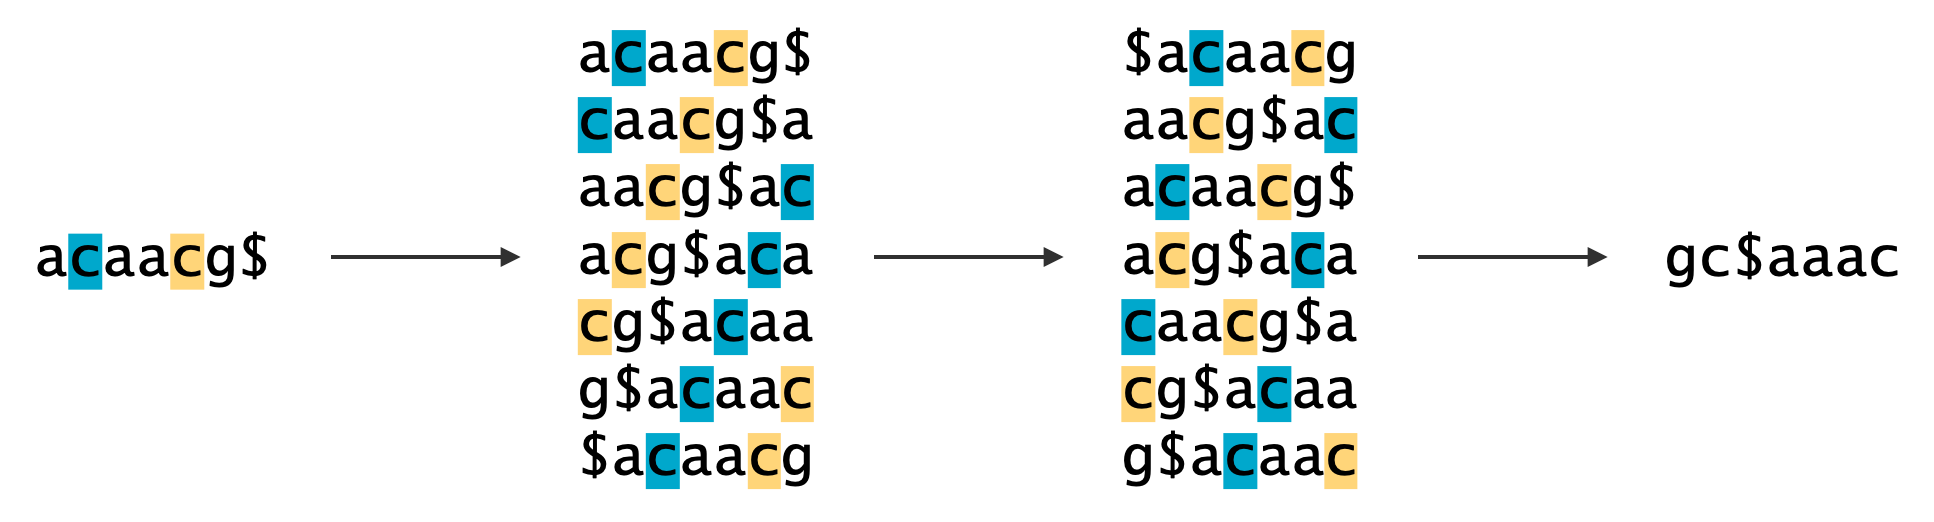 BWT 変換で L 列と F 列にある文字列の順序対応。